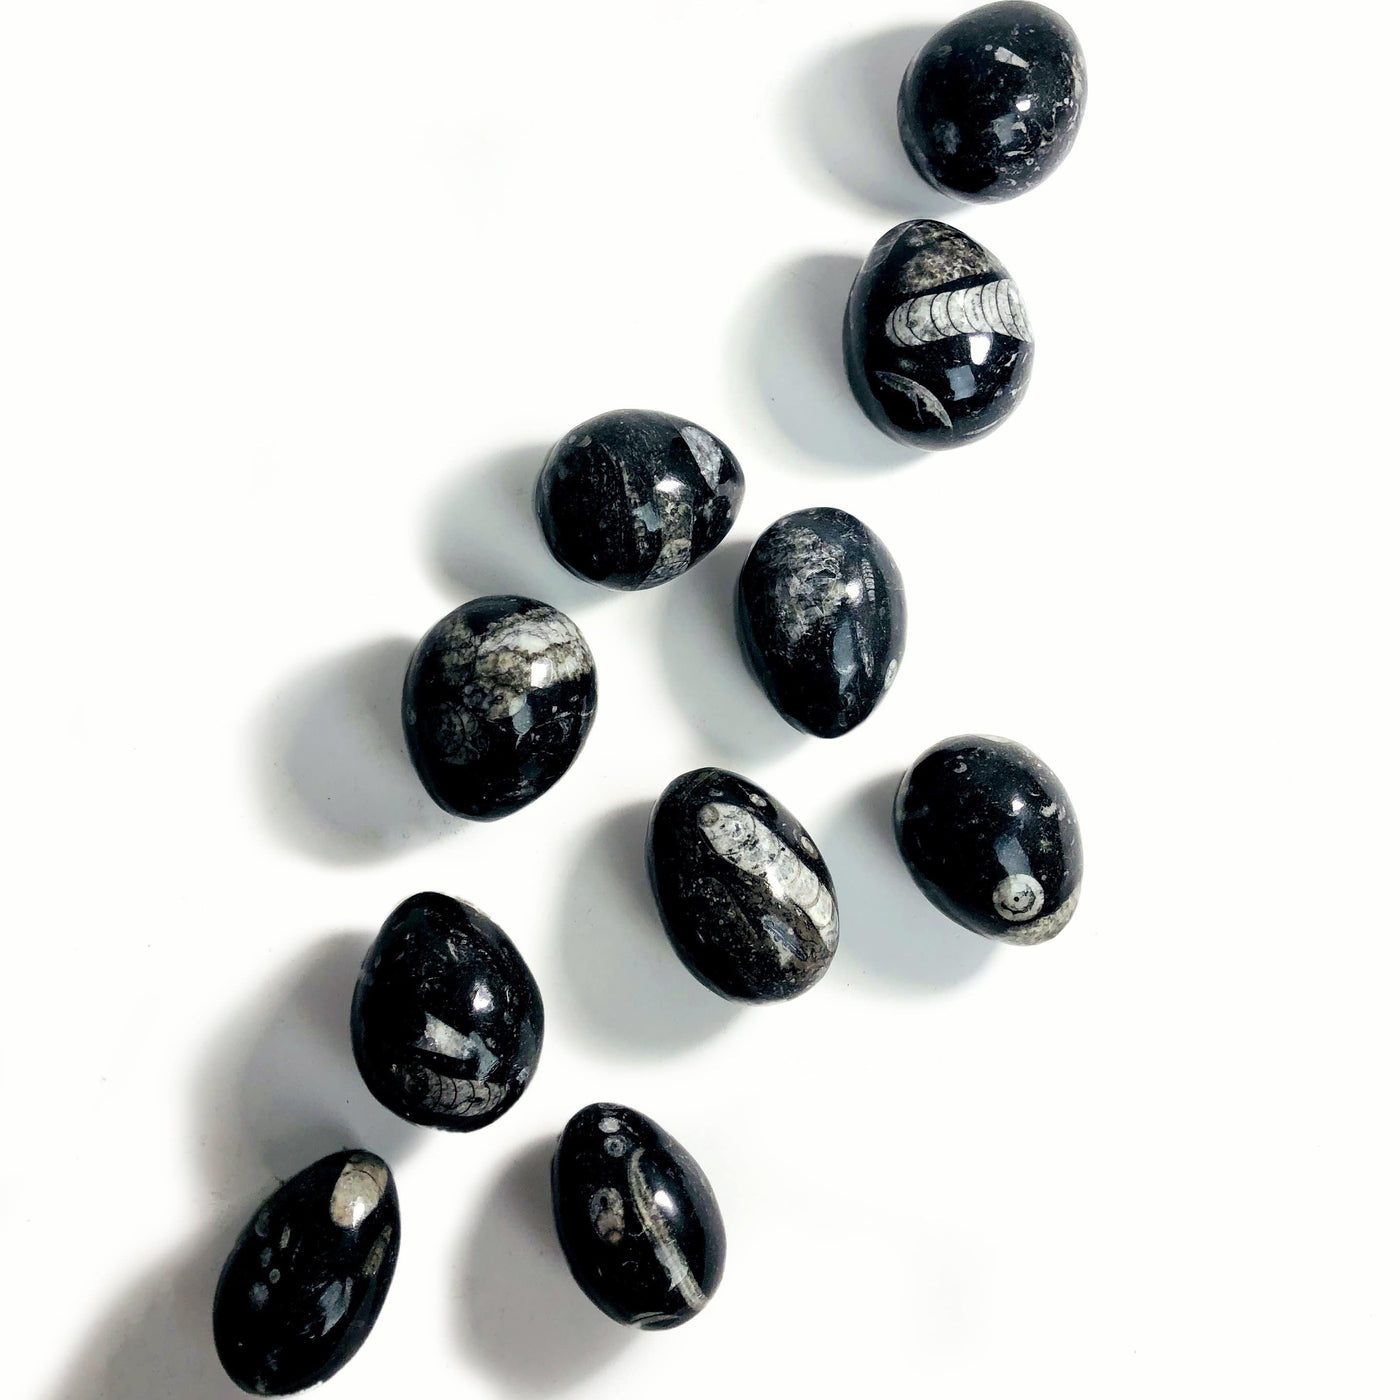 10 Orthoceras egg stones scattered on white background